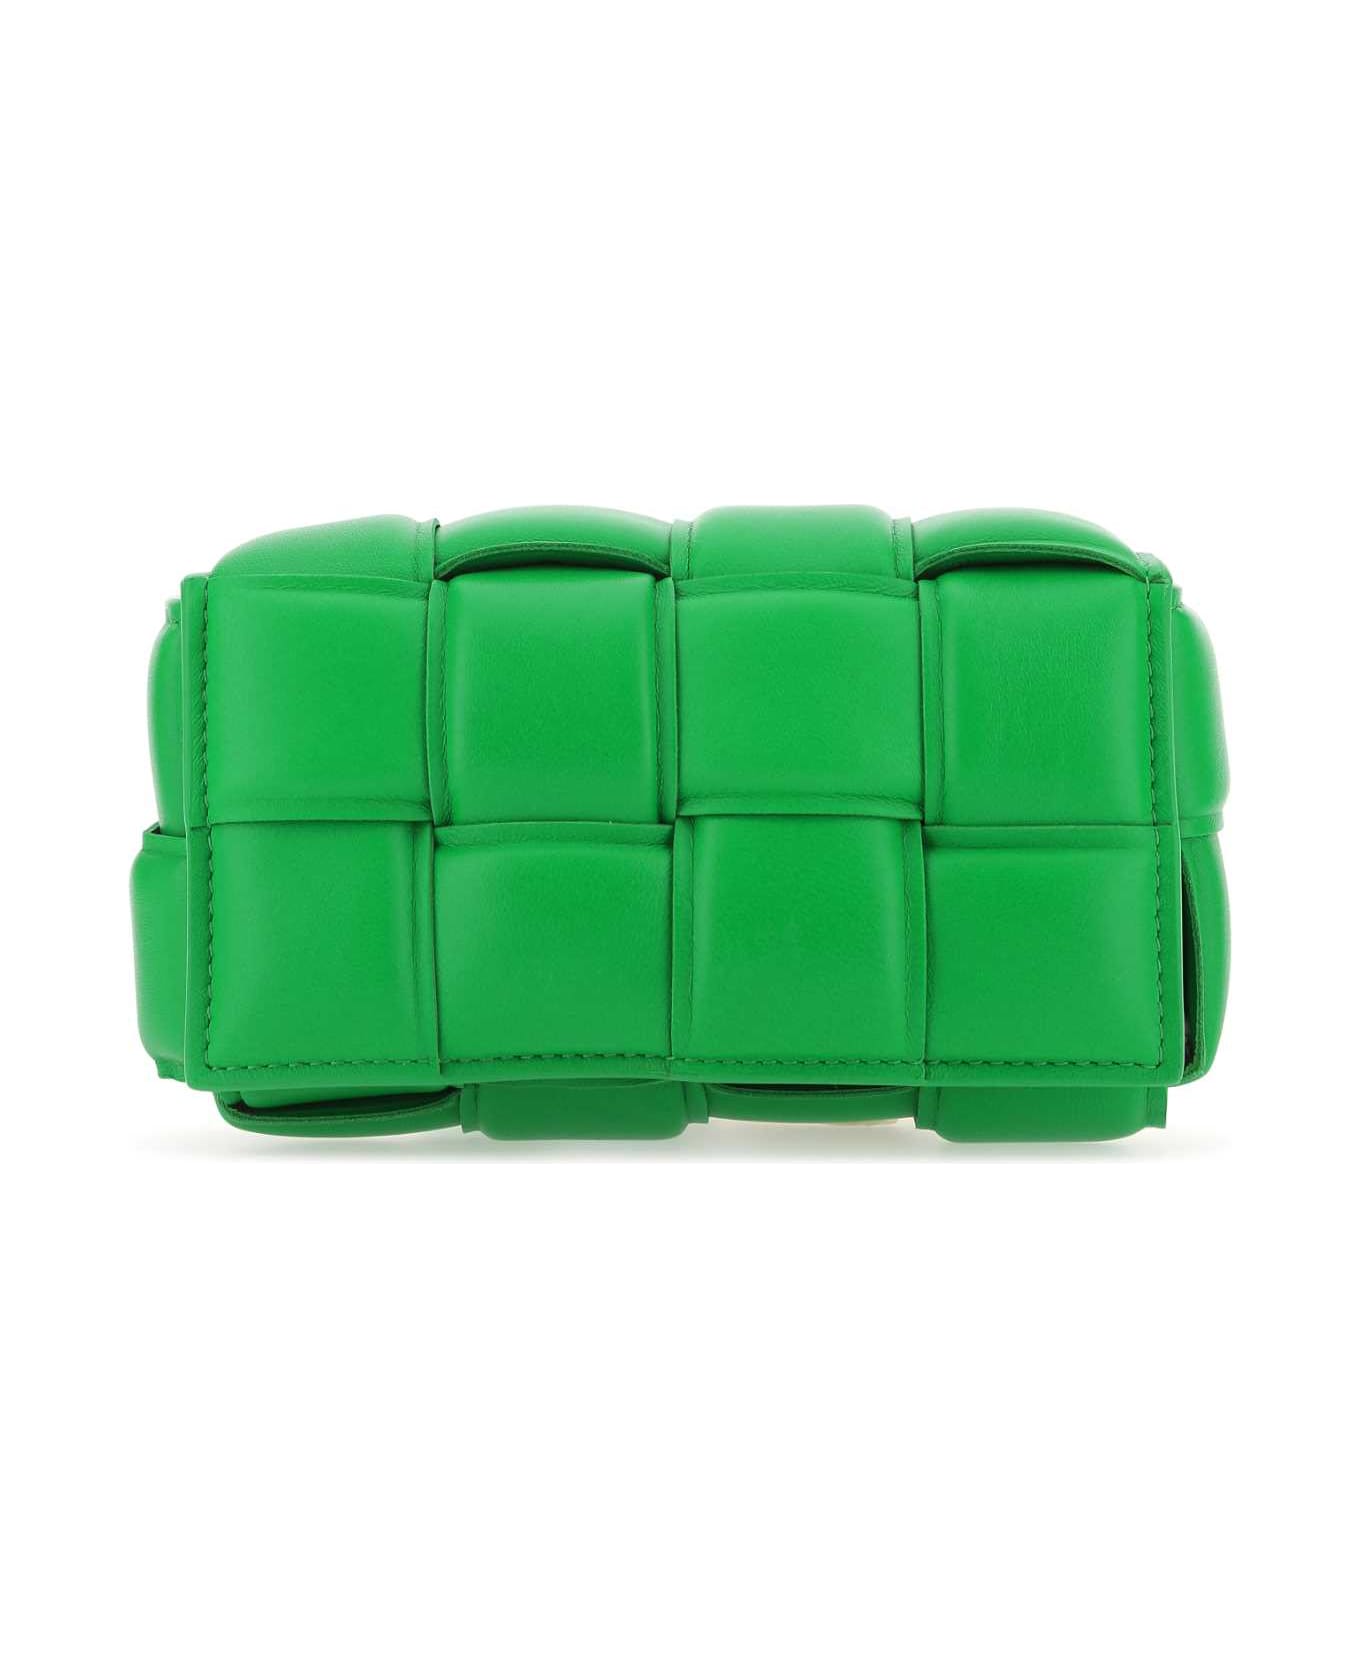 Bottega Veneta Grass Green Nappa Leather Padded Cassette Belt Bag - 3724 バックパック